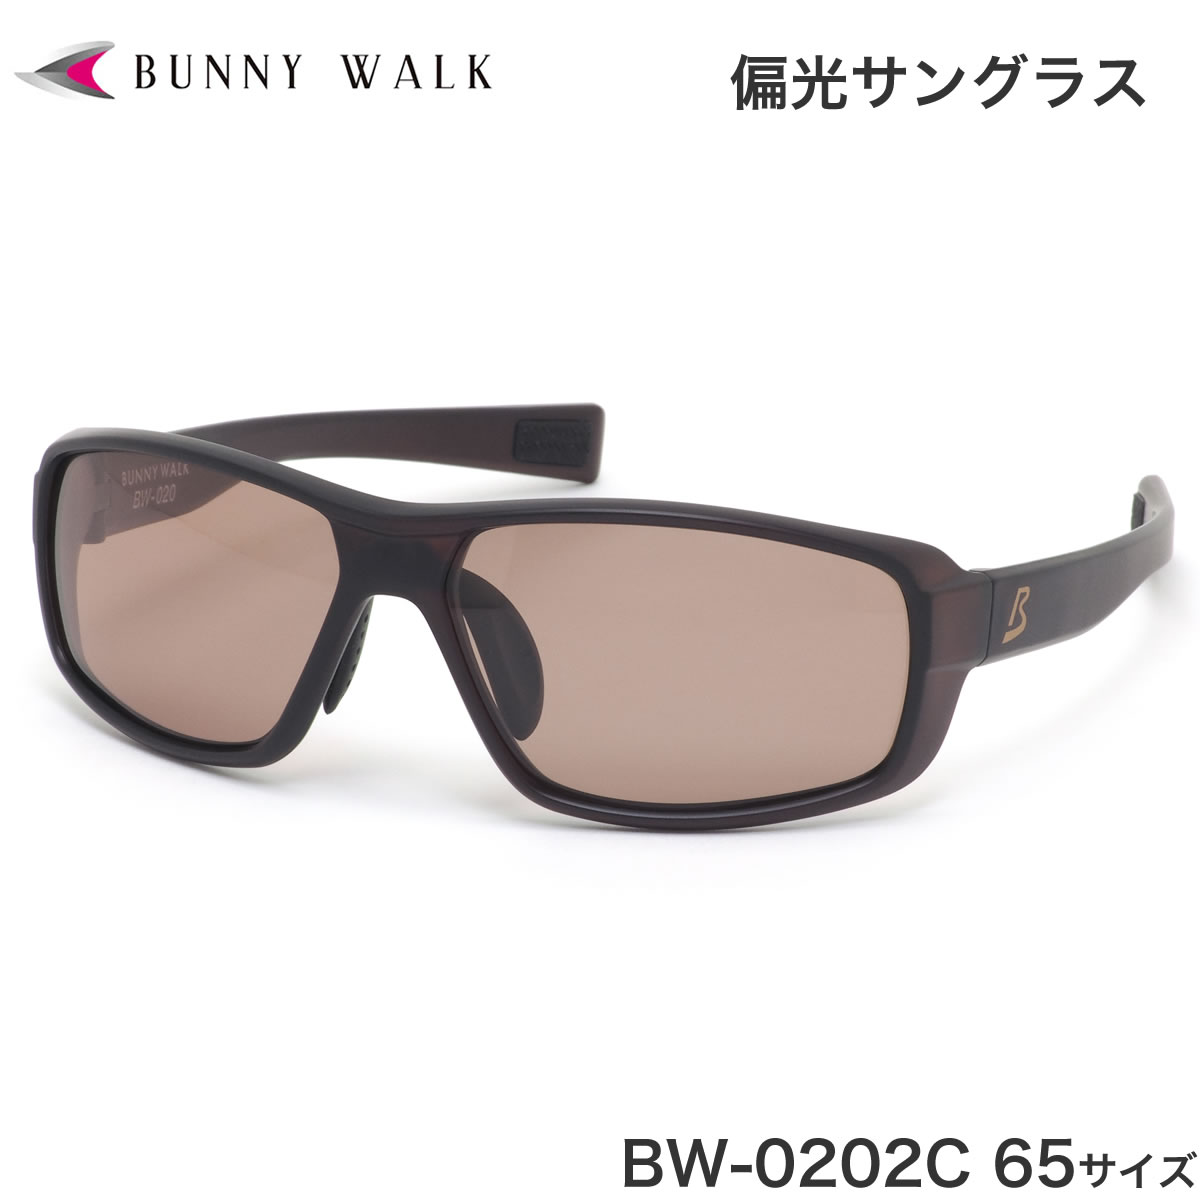 バニーウォーク BUNNY WALK サングラス BW-020 2C 65 偏光サングラス ポップアップレンズ 日本製レンズ 釣り アウトドア  ドライブ メンズ レディース | メガネ・サングラスのThat’s